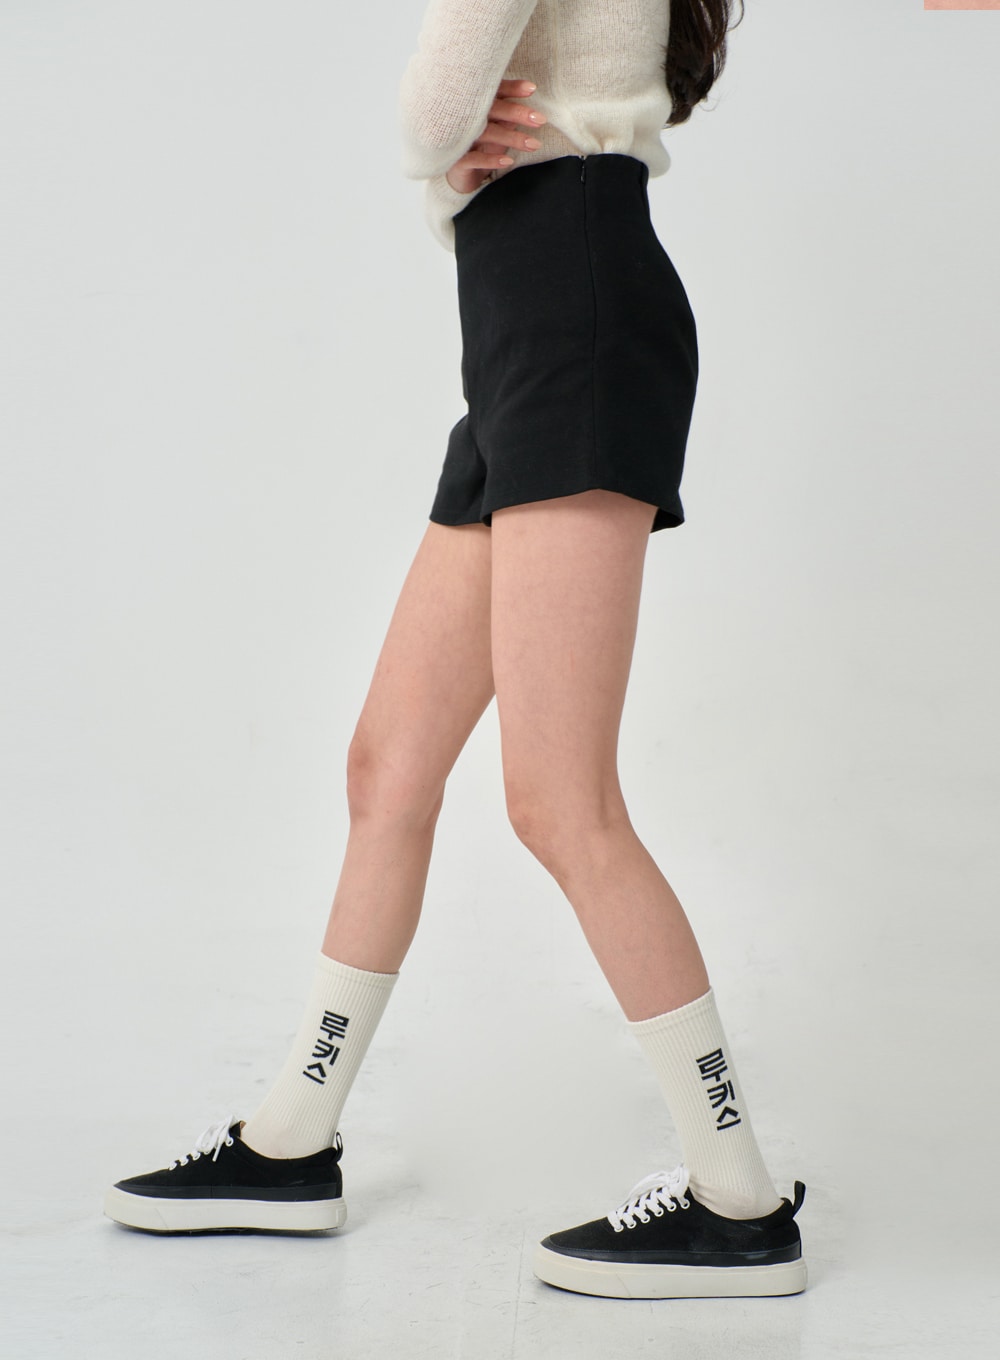 LV/Louis Vuitton-Flocking letter stockings exported to Japansock socks no  sock korean socks korean s